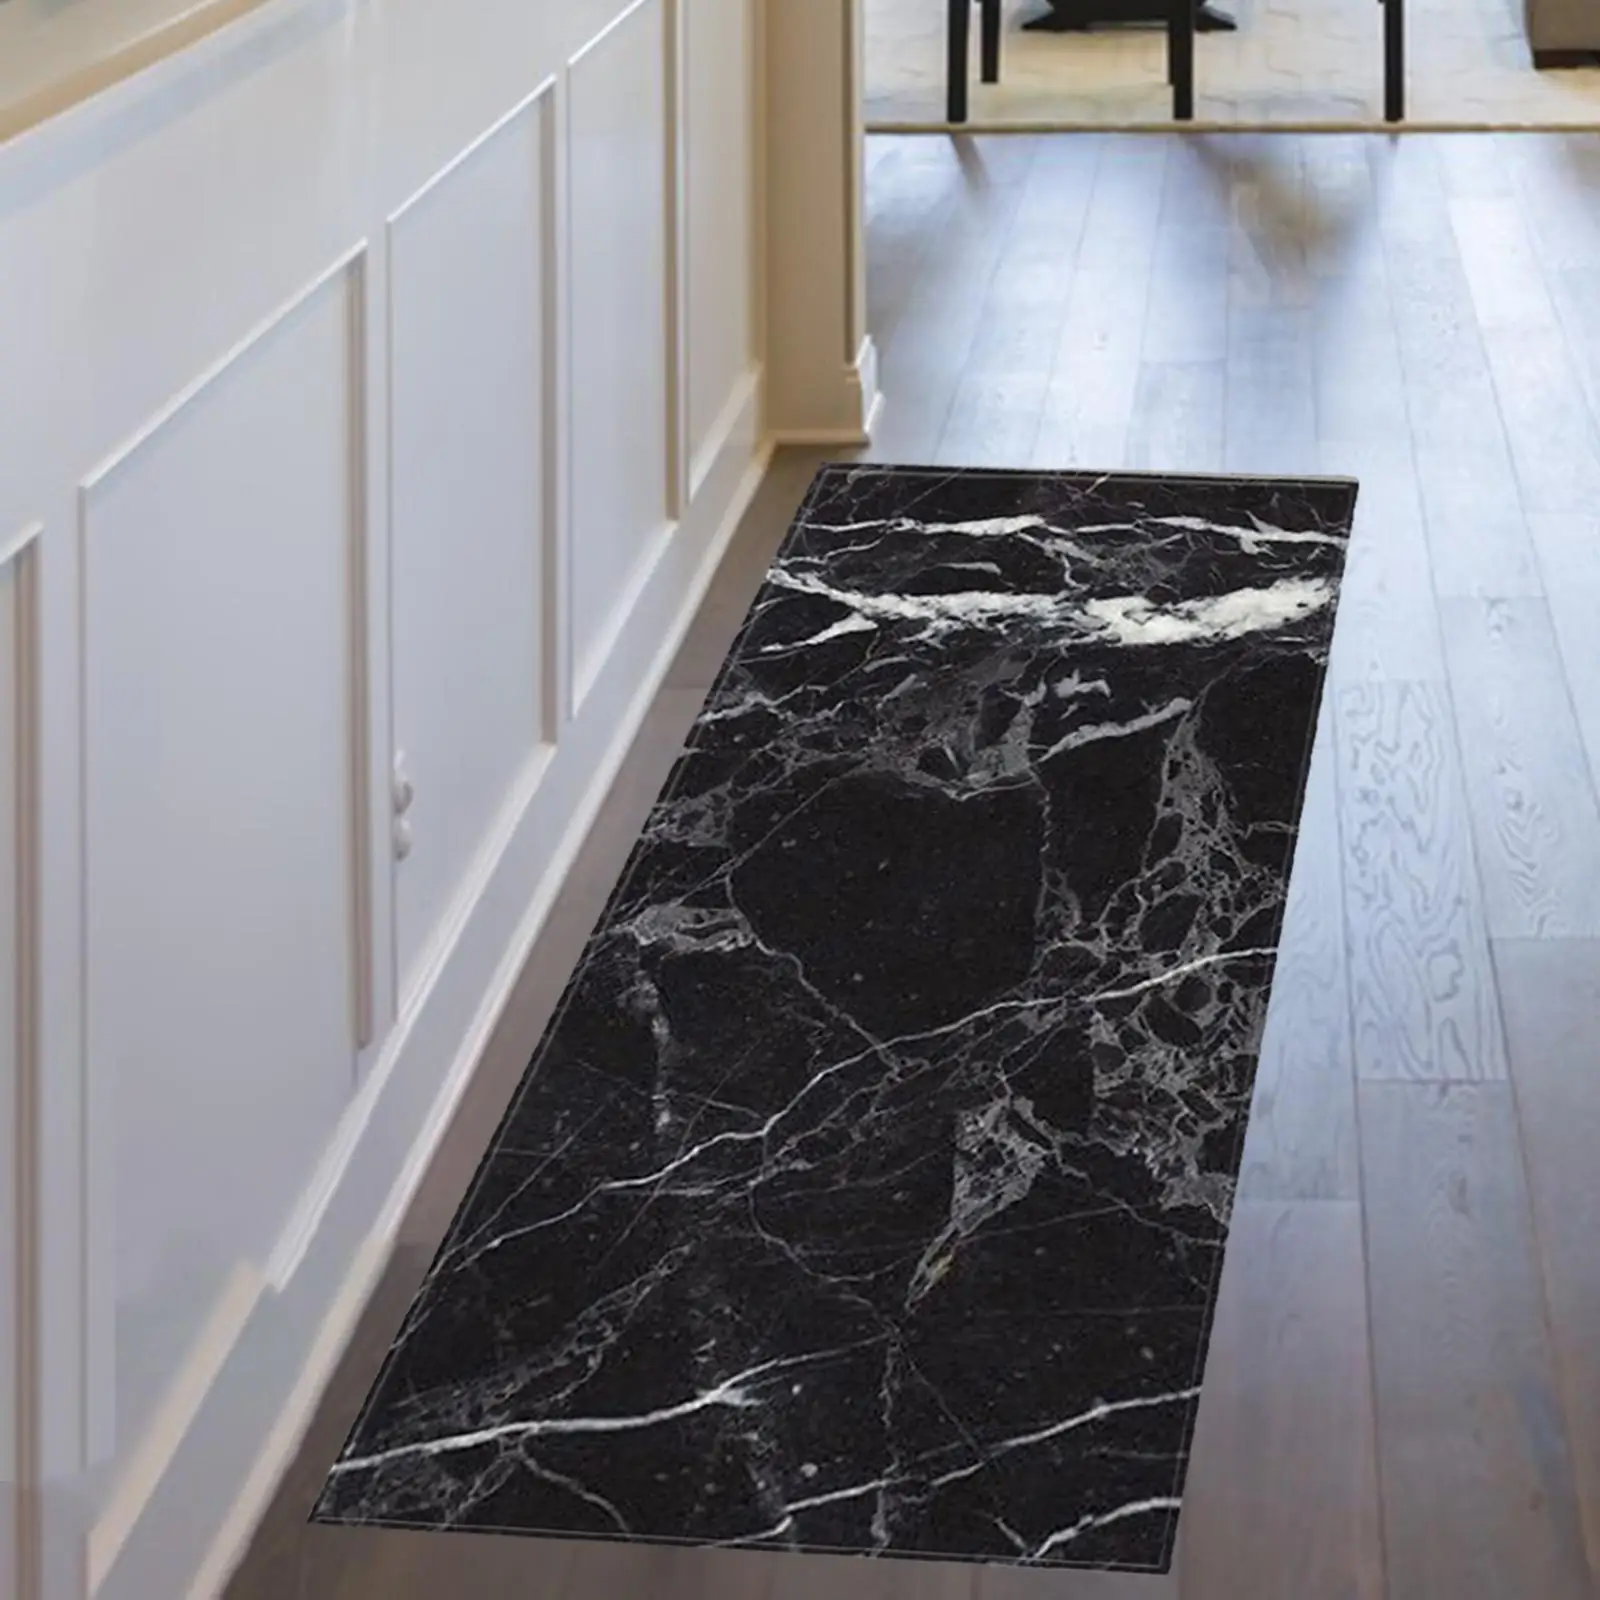 Marble Area Runner Rugs Decorative Area Carpet Door Mat Entrance Doormat for Indoor Living Room Entryway Bedroom Corridor